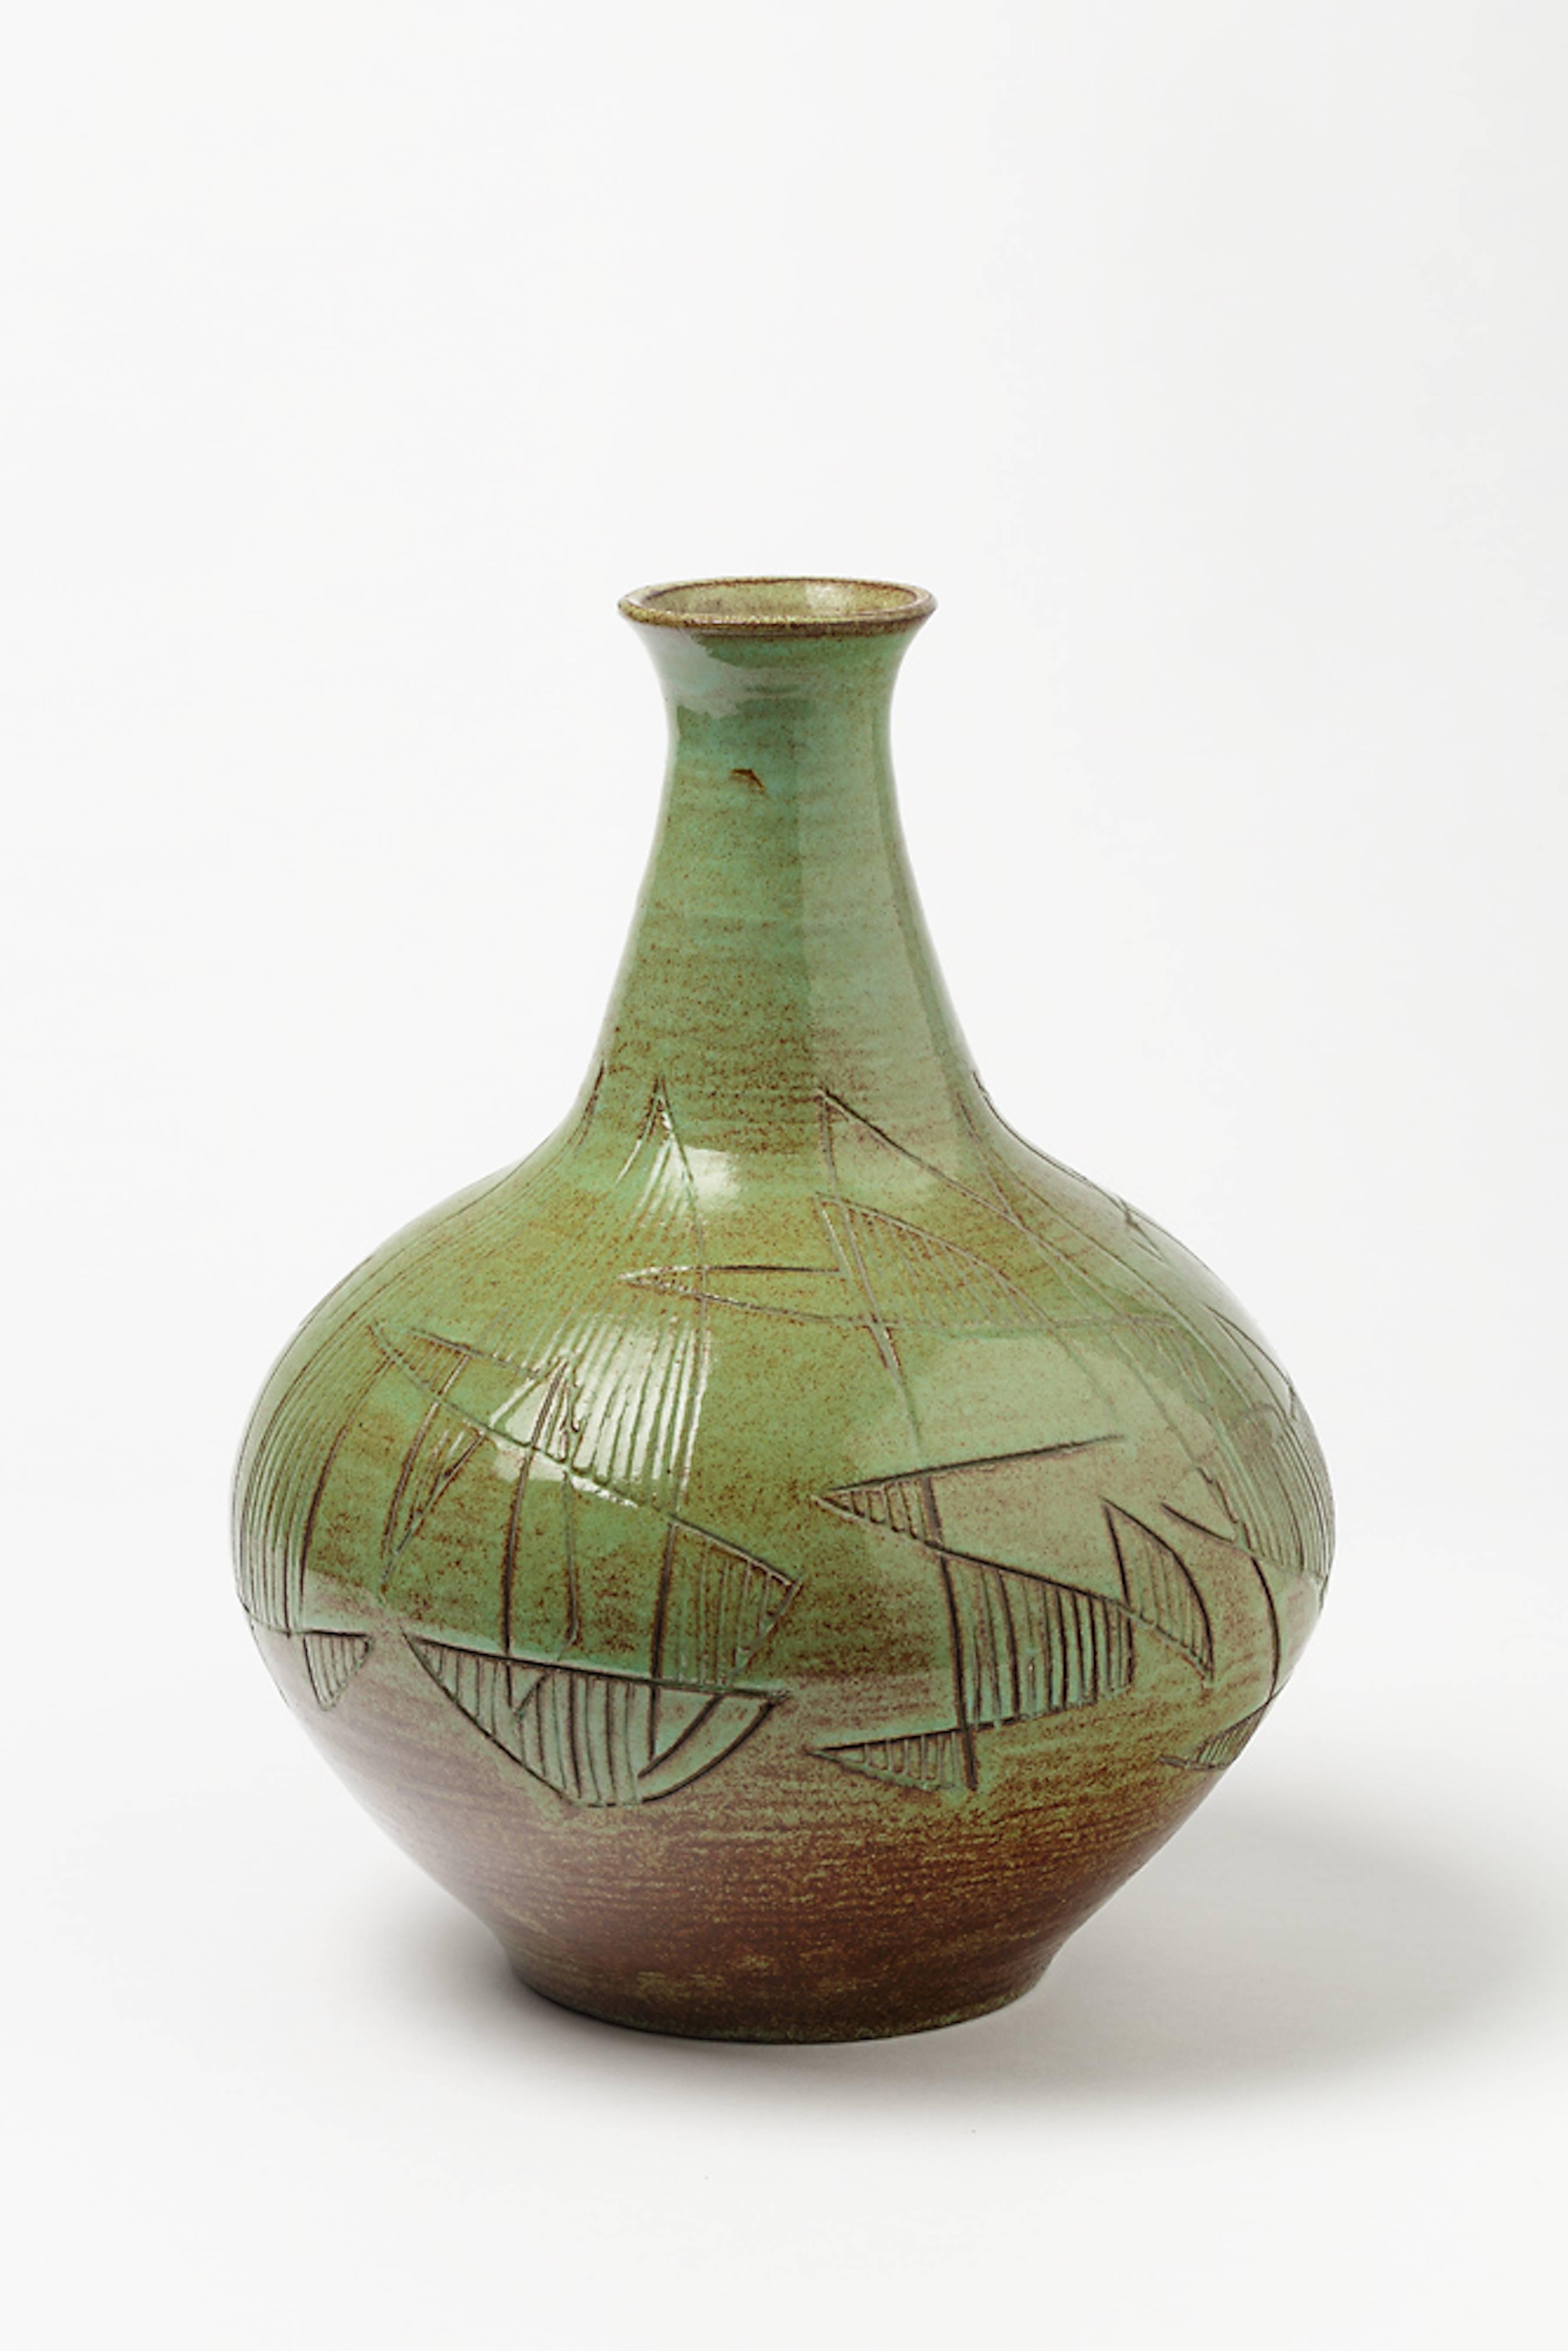 Un étonnant vase en céramique d'Accolay avec une décoration abstraite.
Conditions d'origine parfaites.
Signé sous la base,
circa 1960-1970.